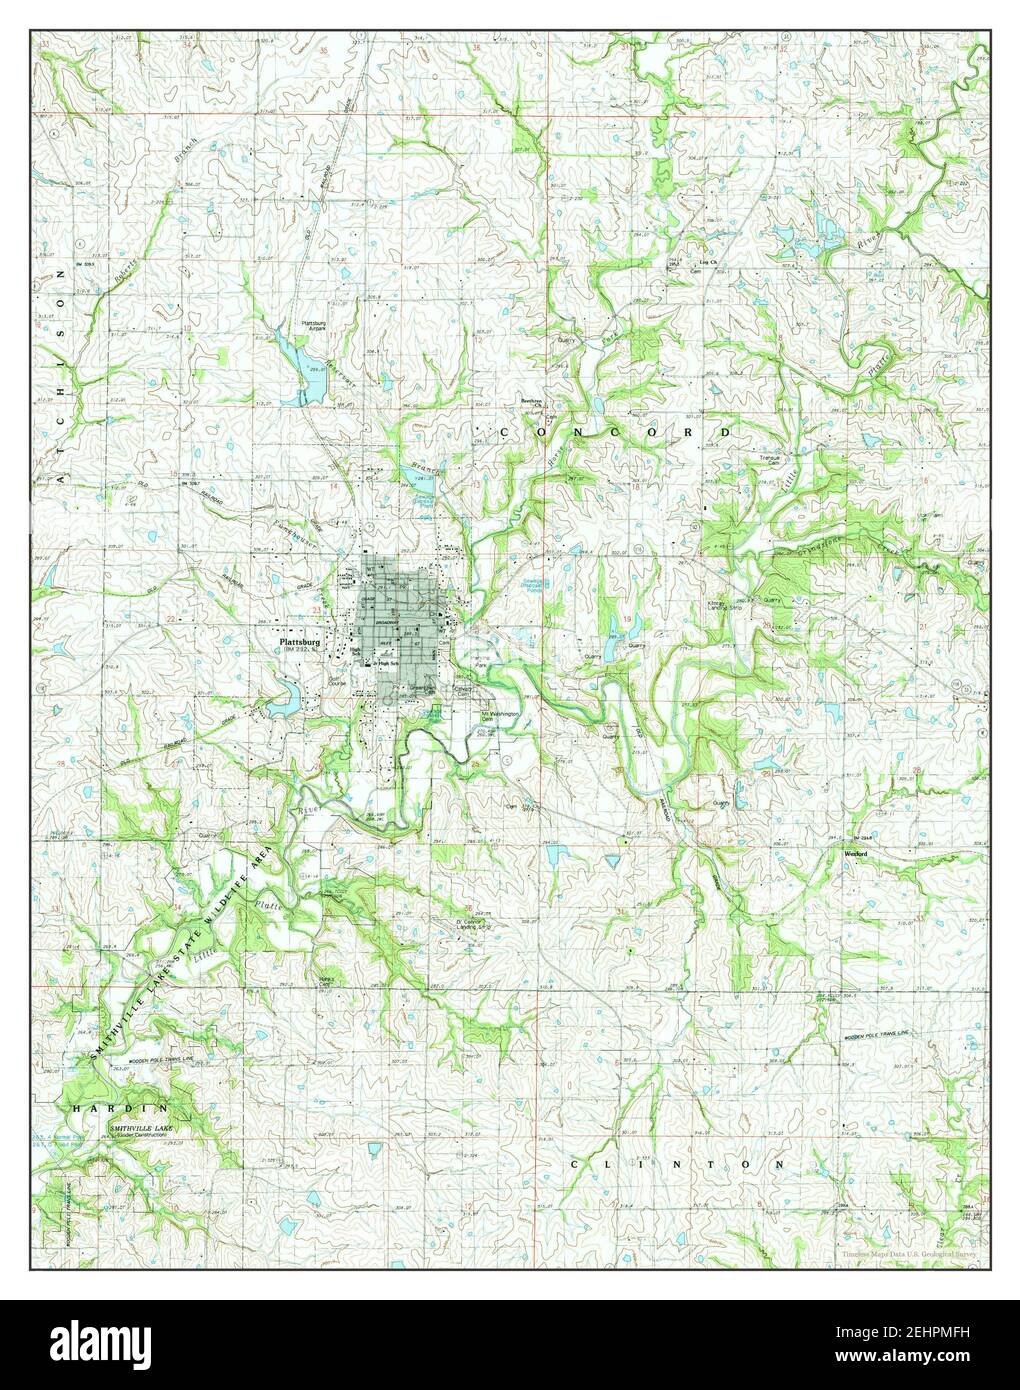 Plattsburg, Missouri, Karte 1984, 1:24000, Vereinigte Staaten von Amerika von Timeless Maps, Daten U.S. Geological Survey Stockfoto